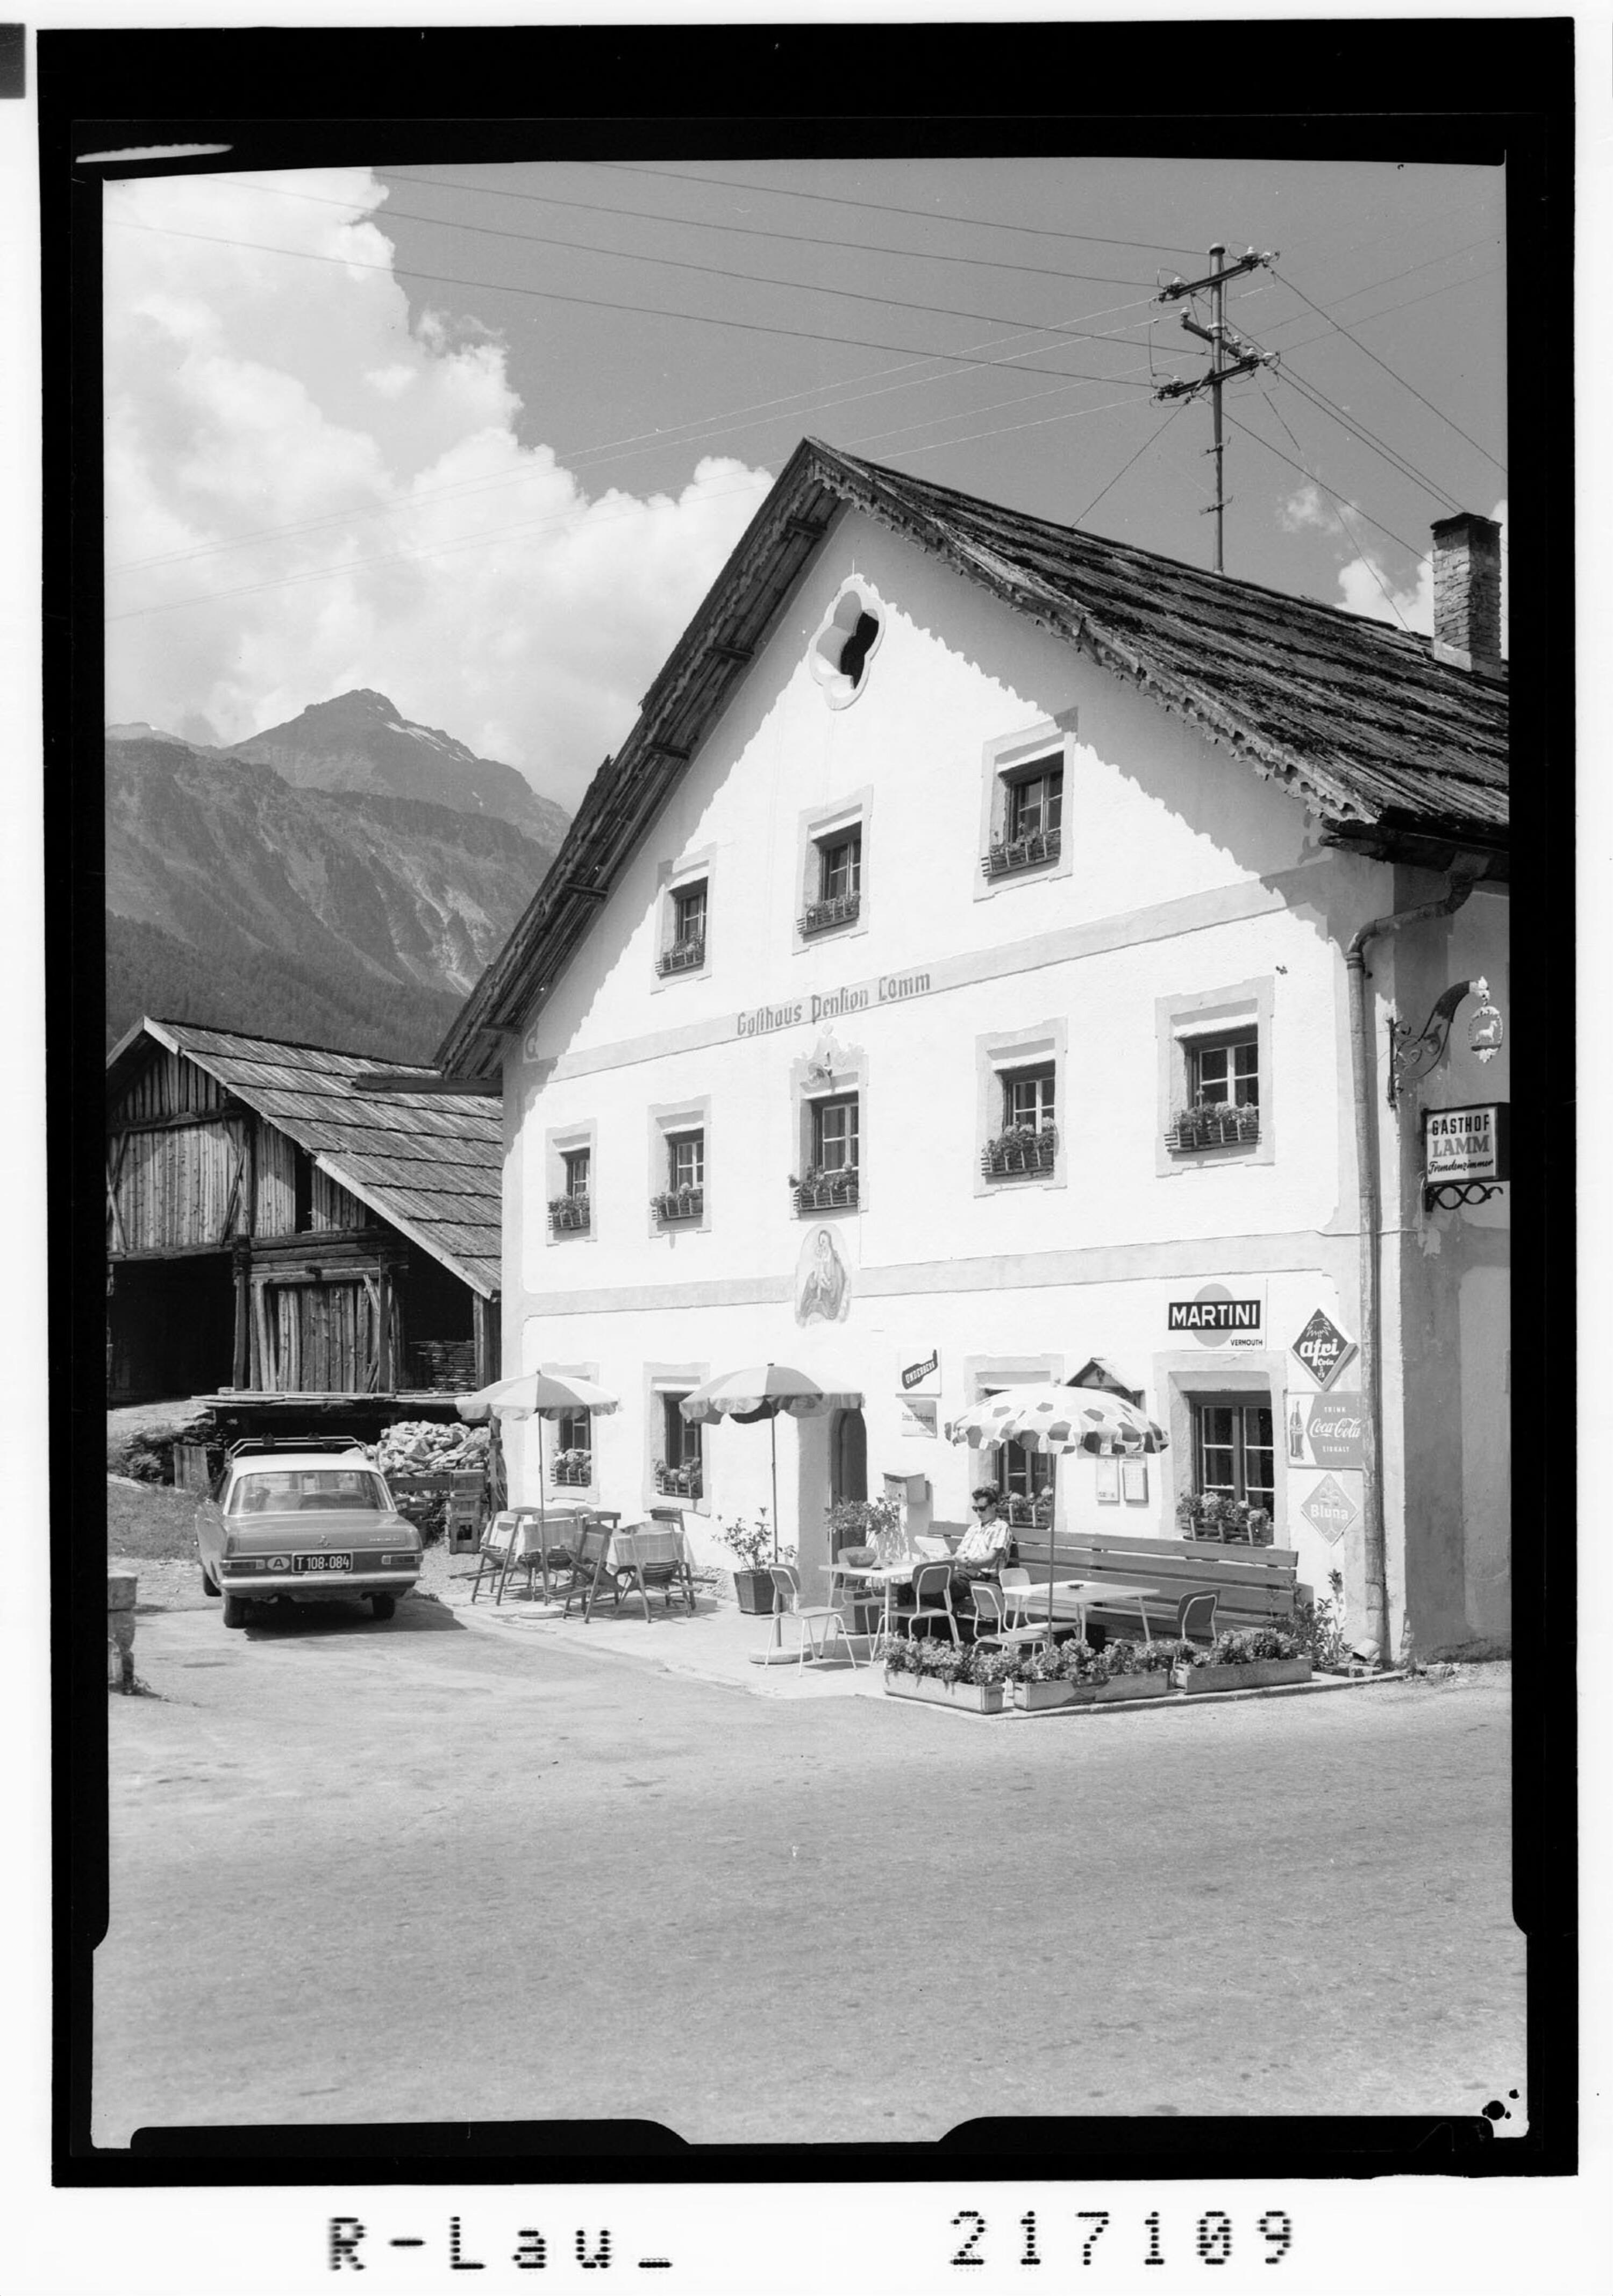 Au bei Längenfeld im Ötztal / Tirol / Gasthaus Pension Lamm gegen Fundusfeiler 3080 m></div>


    <hr>
    <div class=